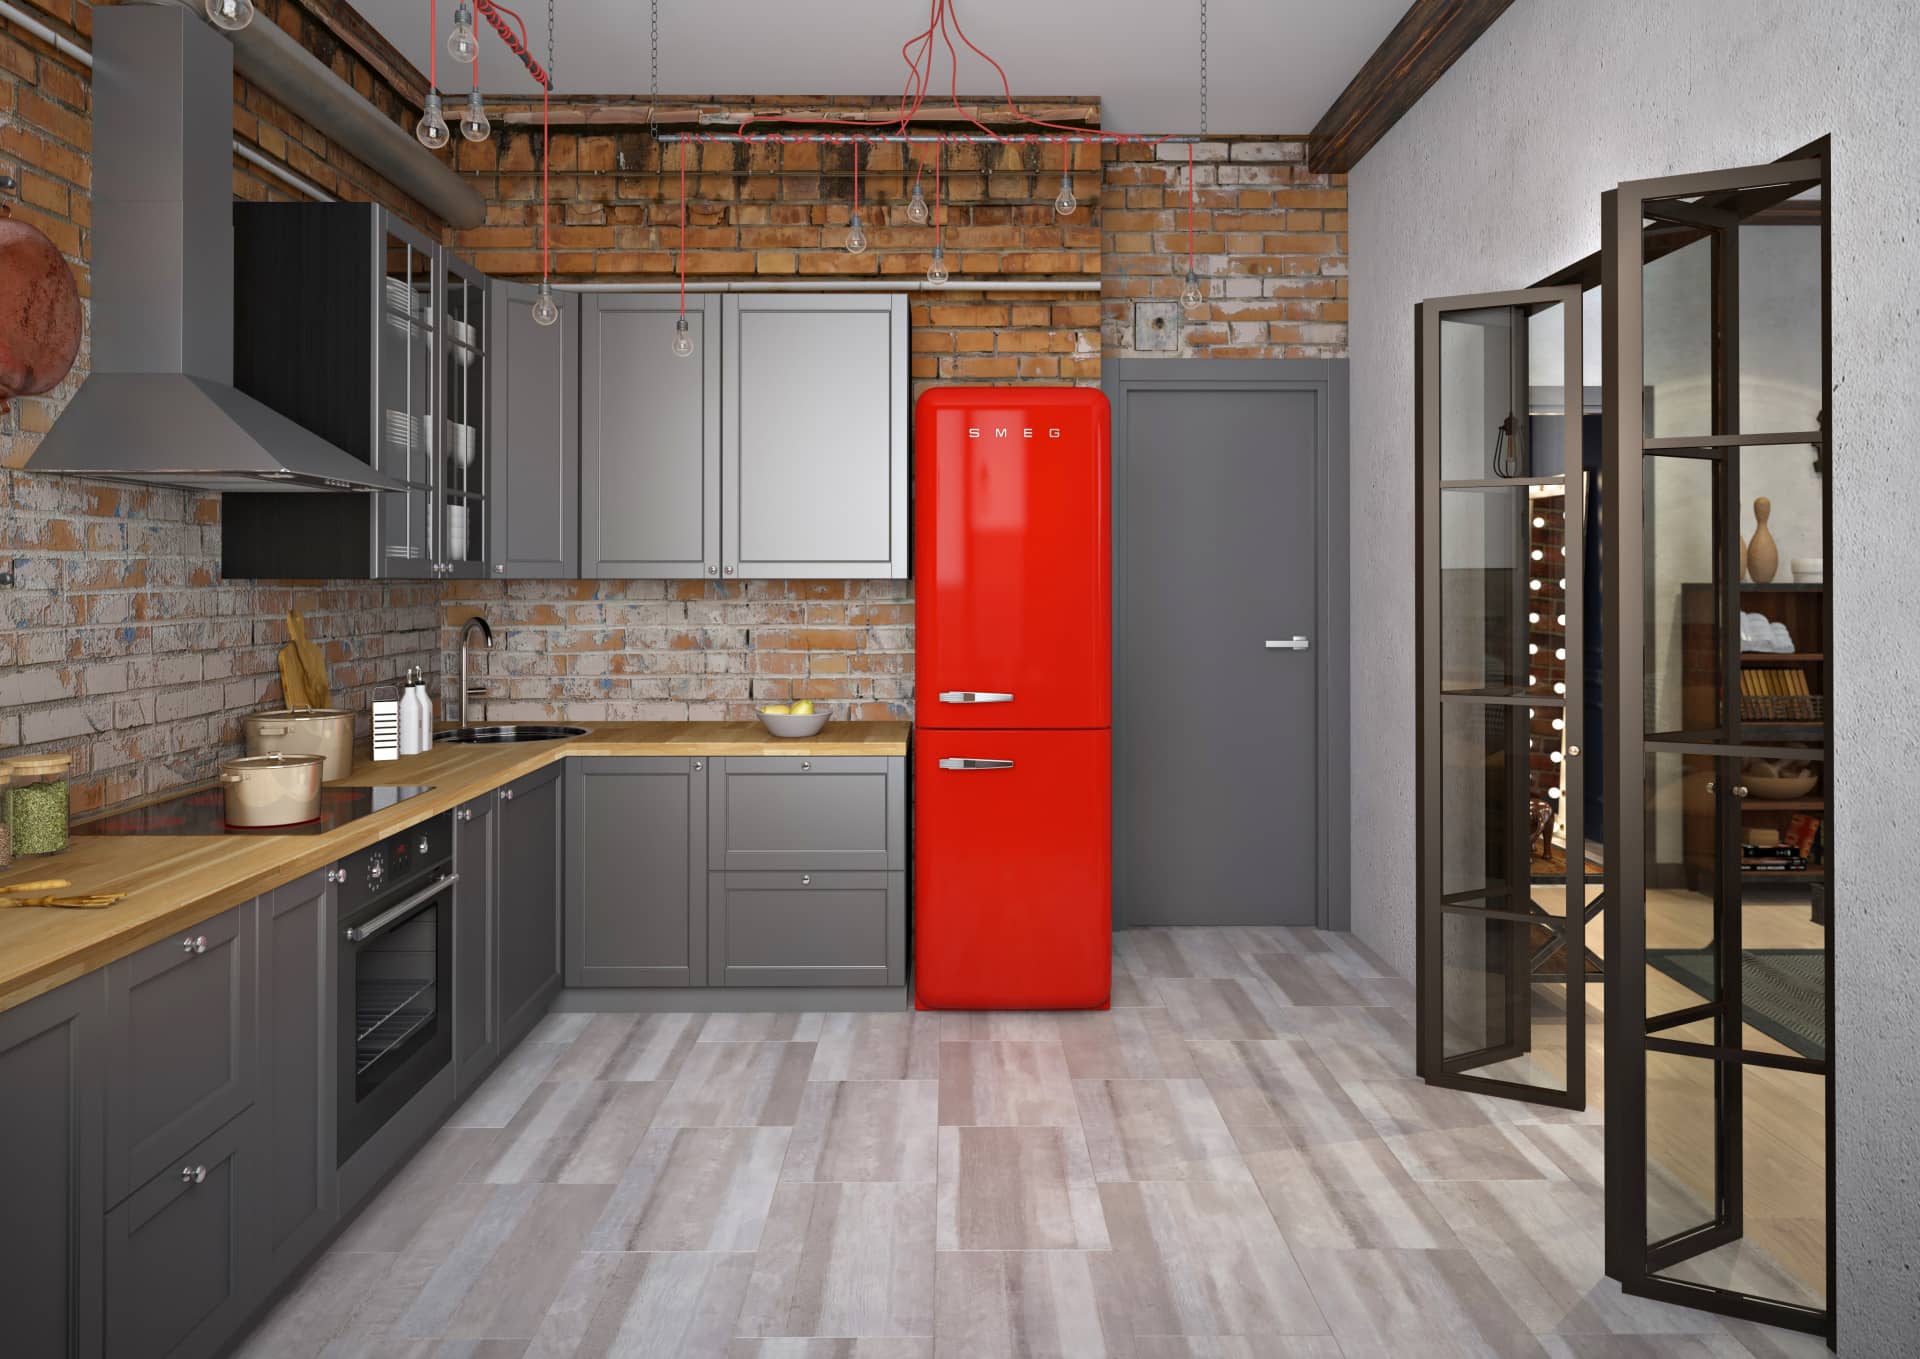 Яркий - красный холодильник добавляет яркости и живости интерьеру